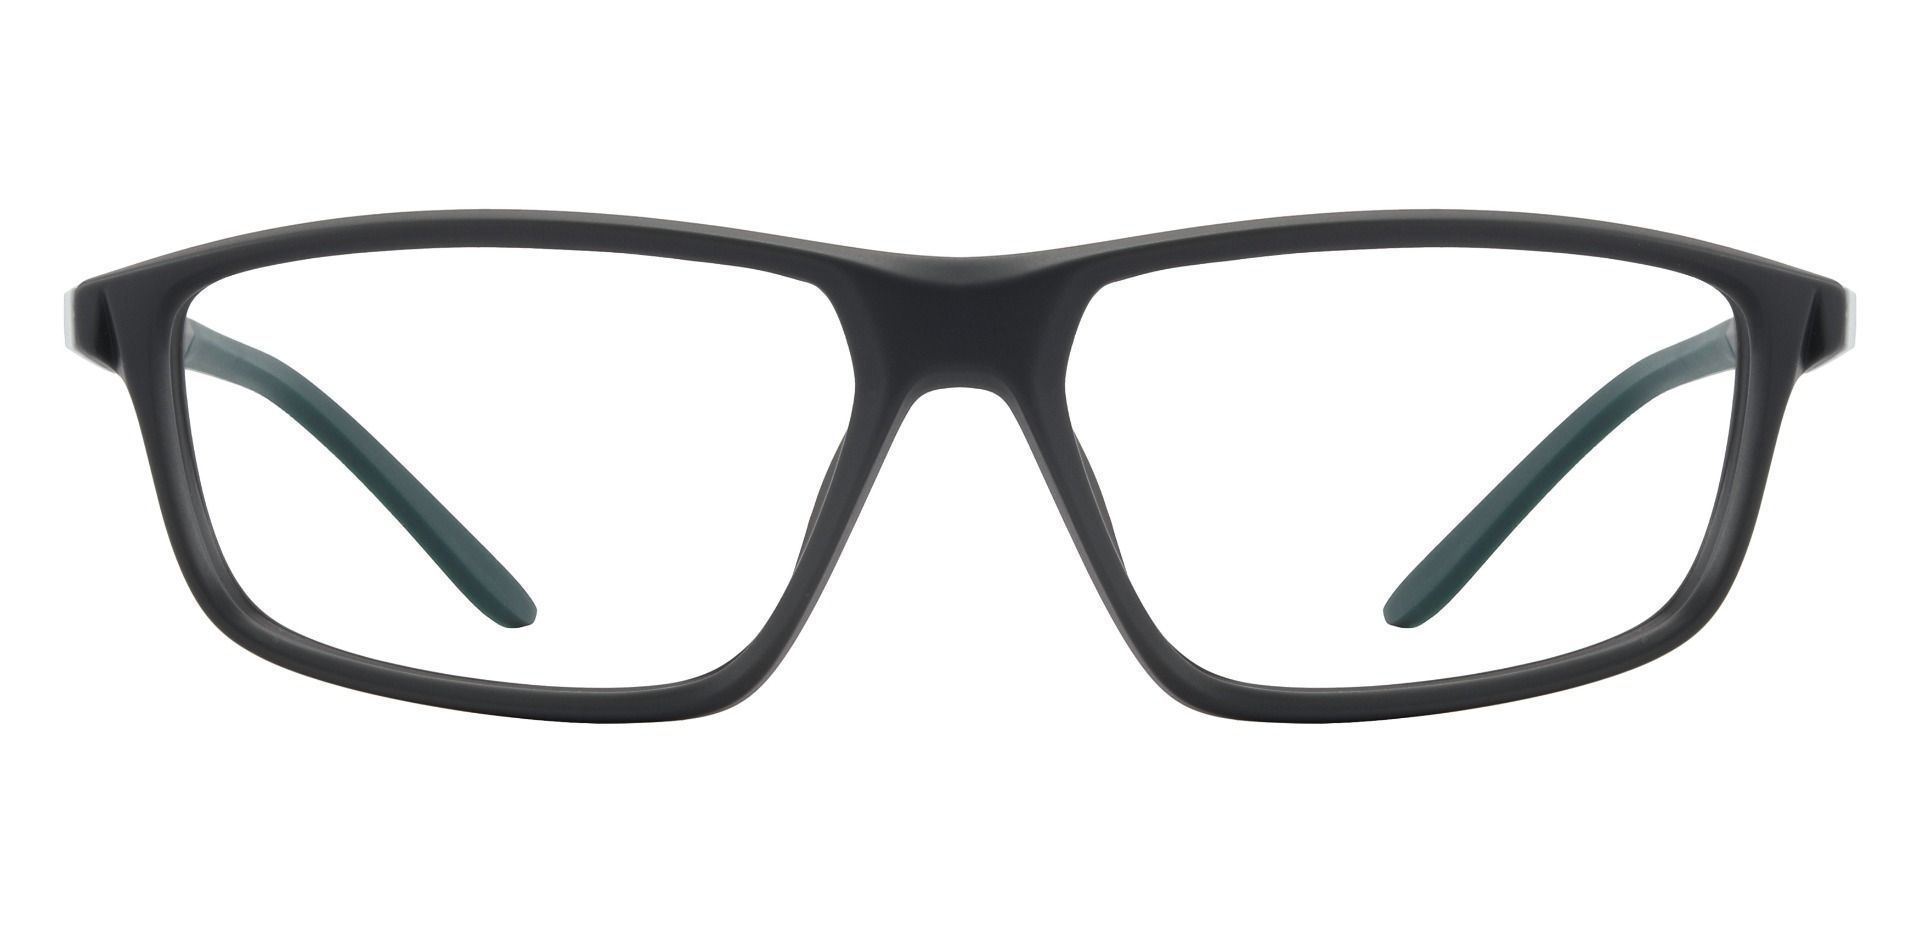 Mark Rectangle Prescription Glasses - Gray